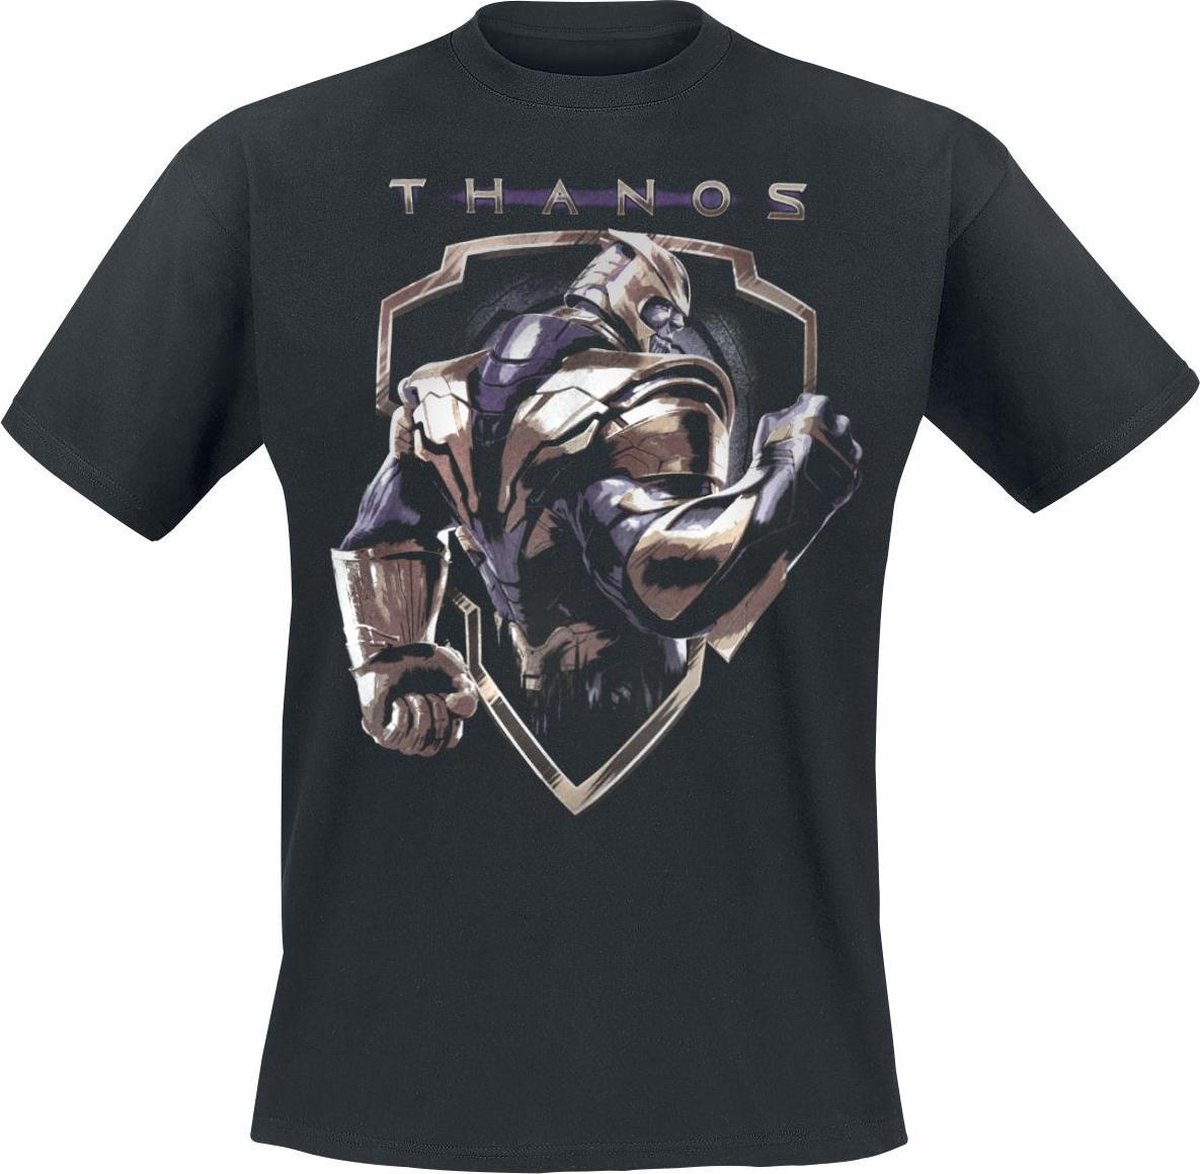 Marvel - Avengers Endgame Thanos Black T-Shirt M